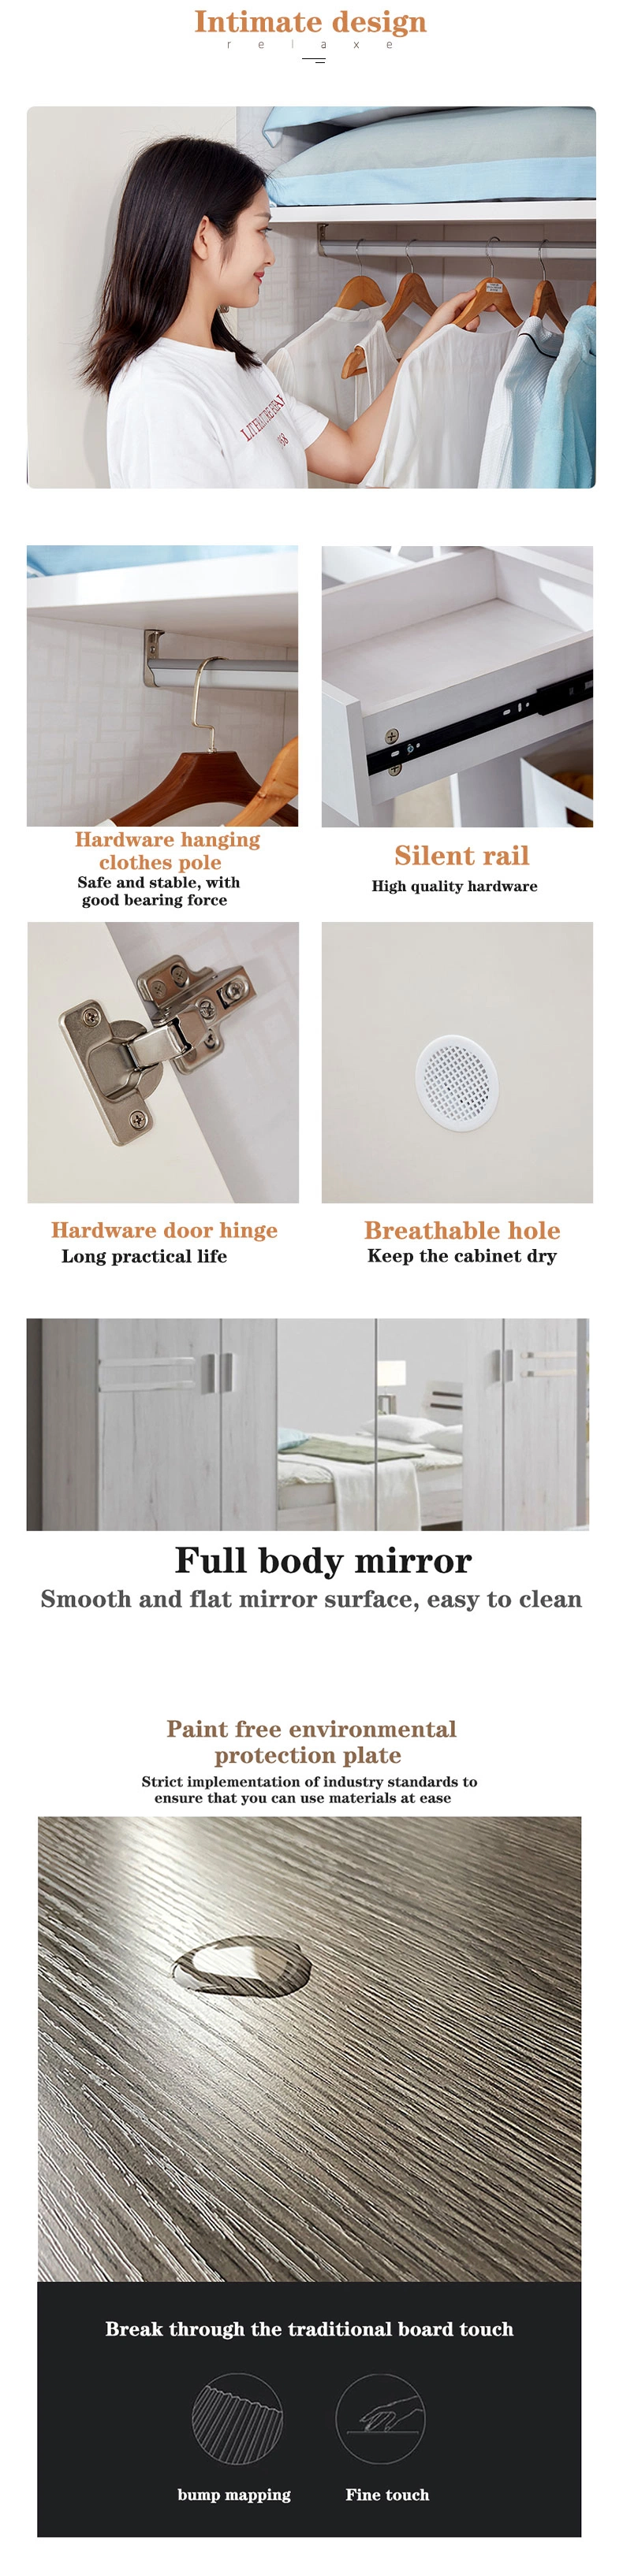 Design Bedroom Wall Italian Style Cabinet with Mirror Door Closet Hallway Luxury Built-in Wardrobe with Sliding Door